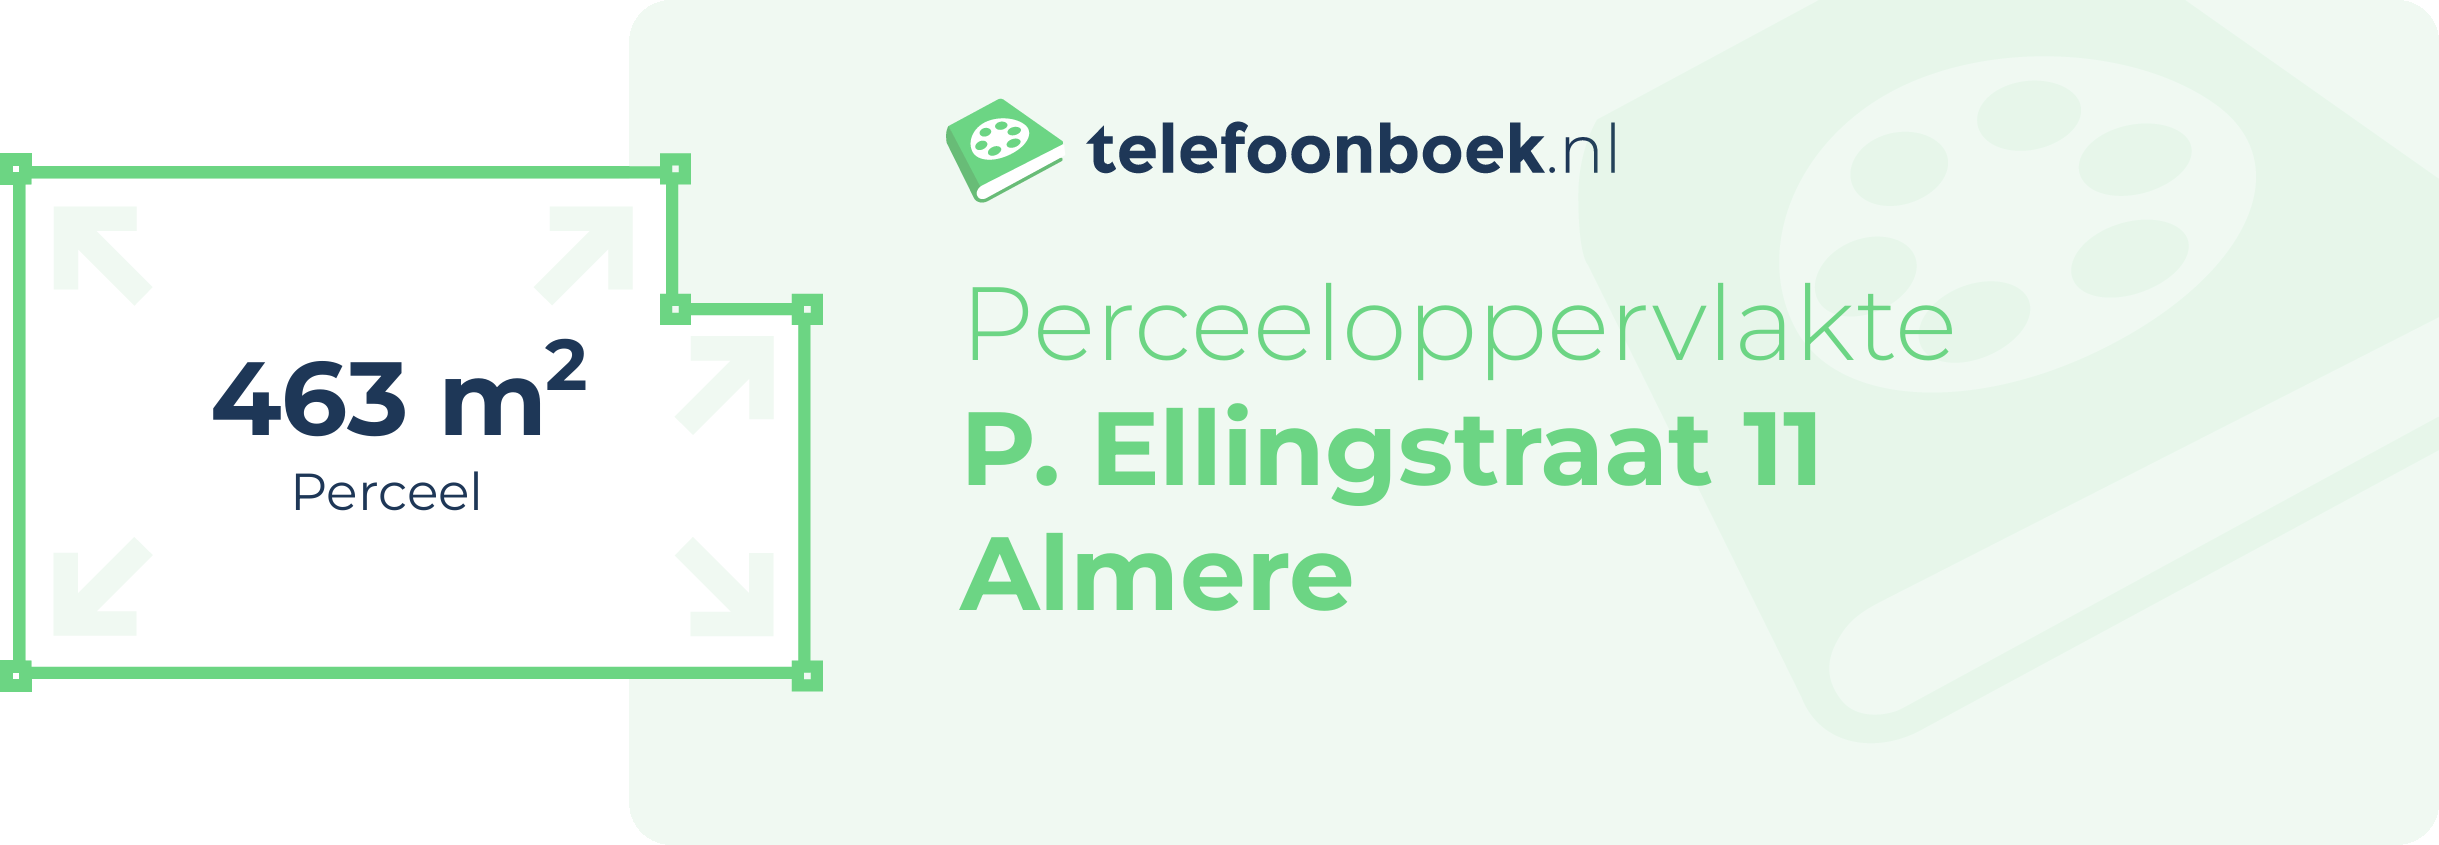 Perceeloppervlakte P. Ellingstraat 11 Almere